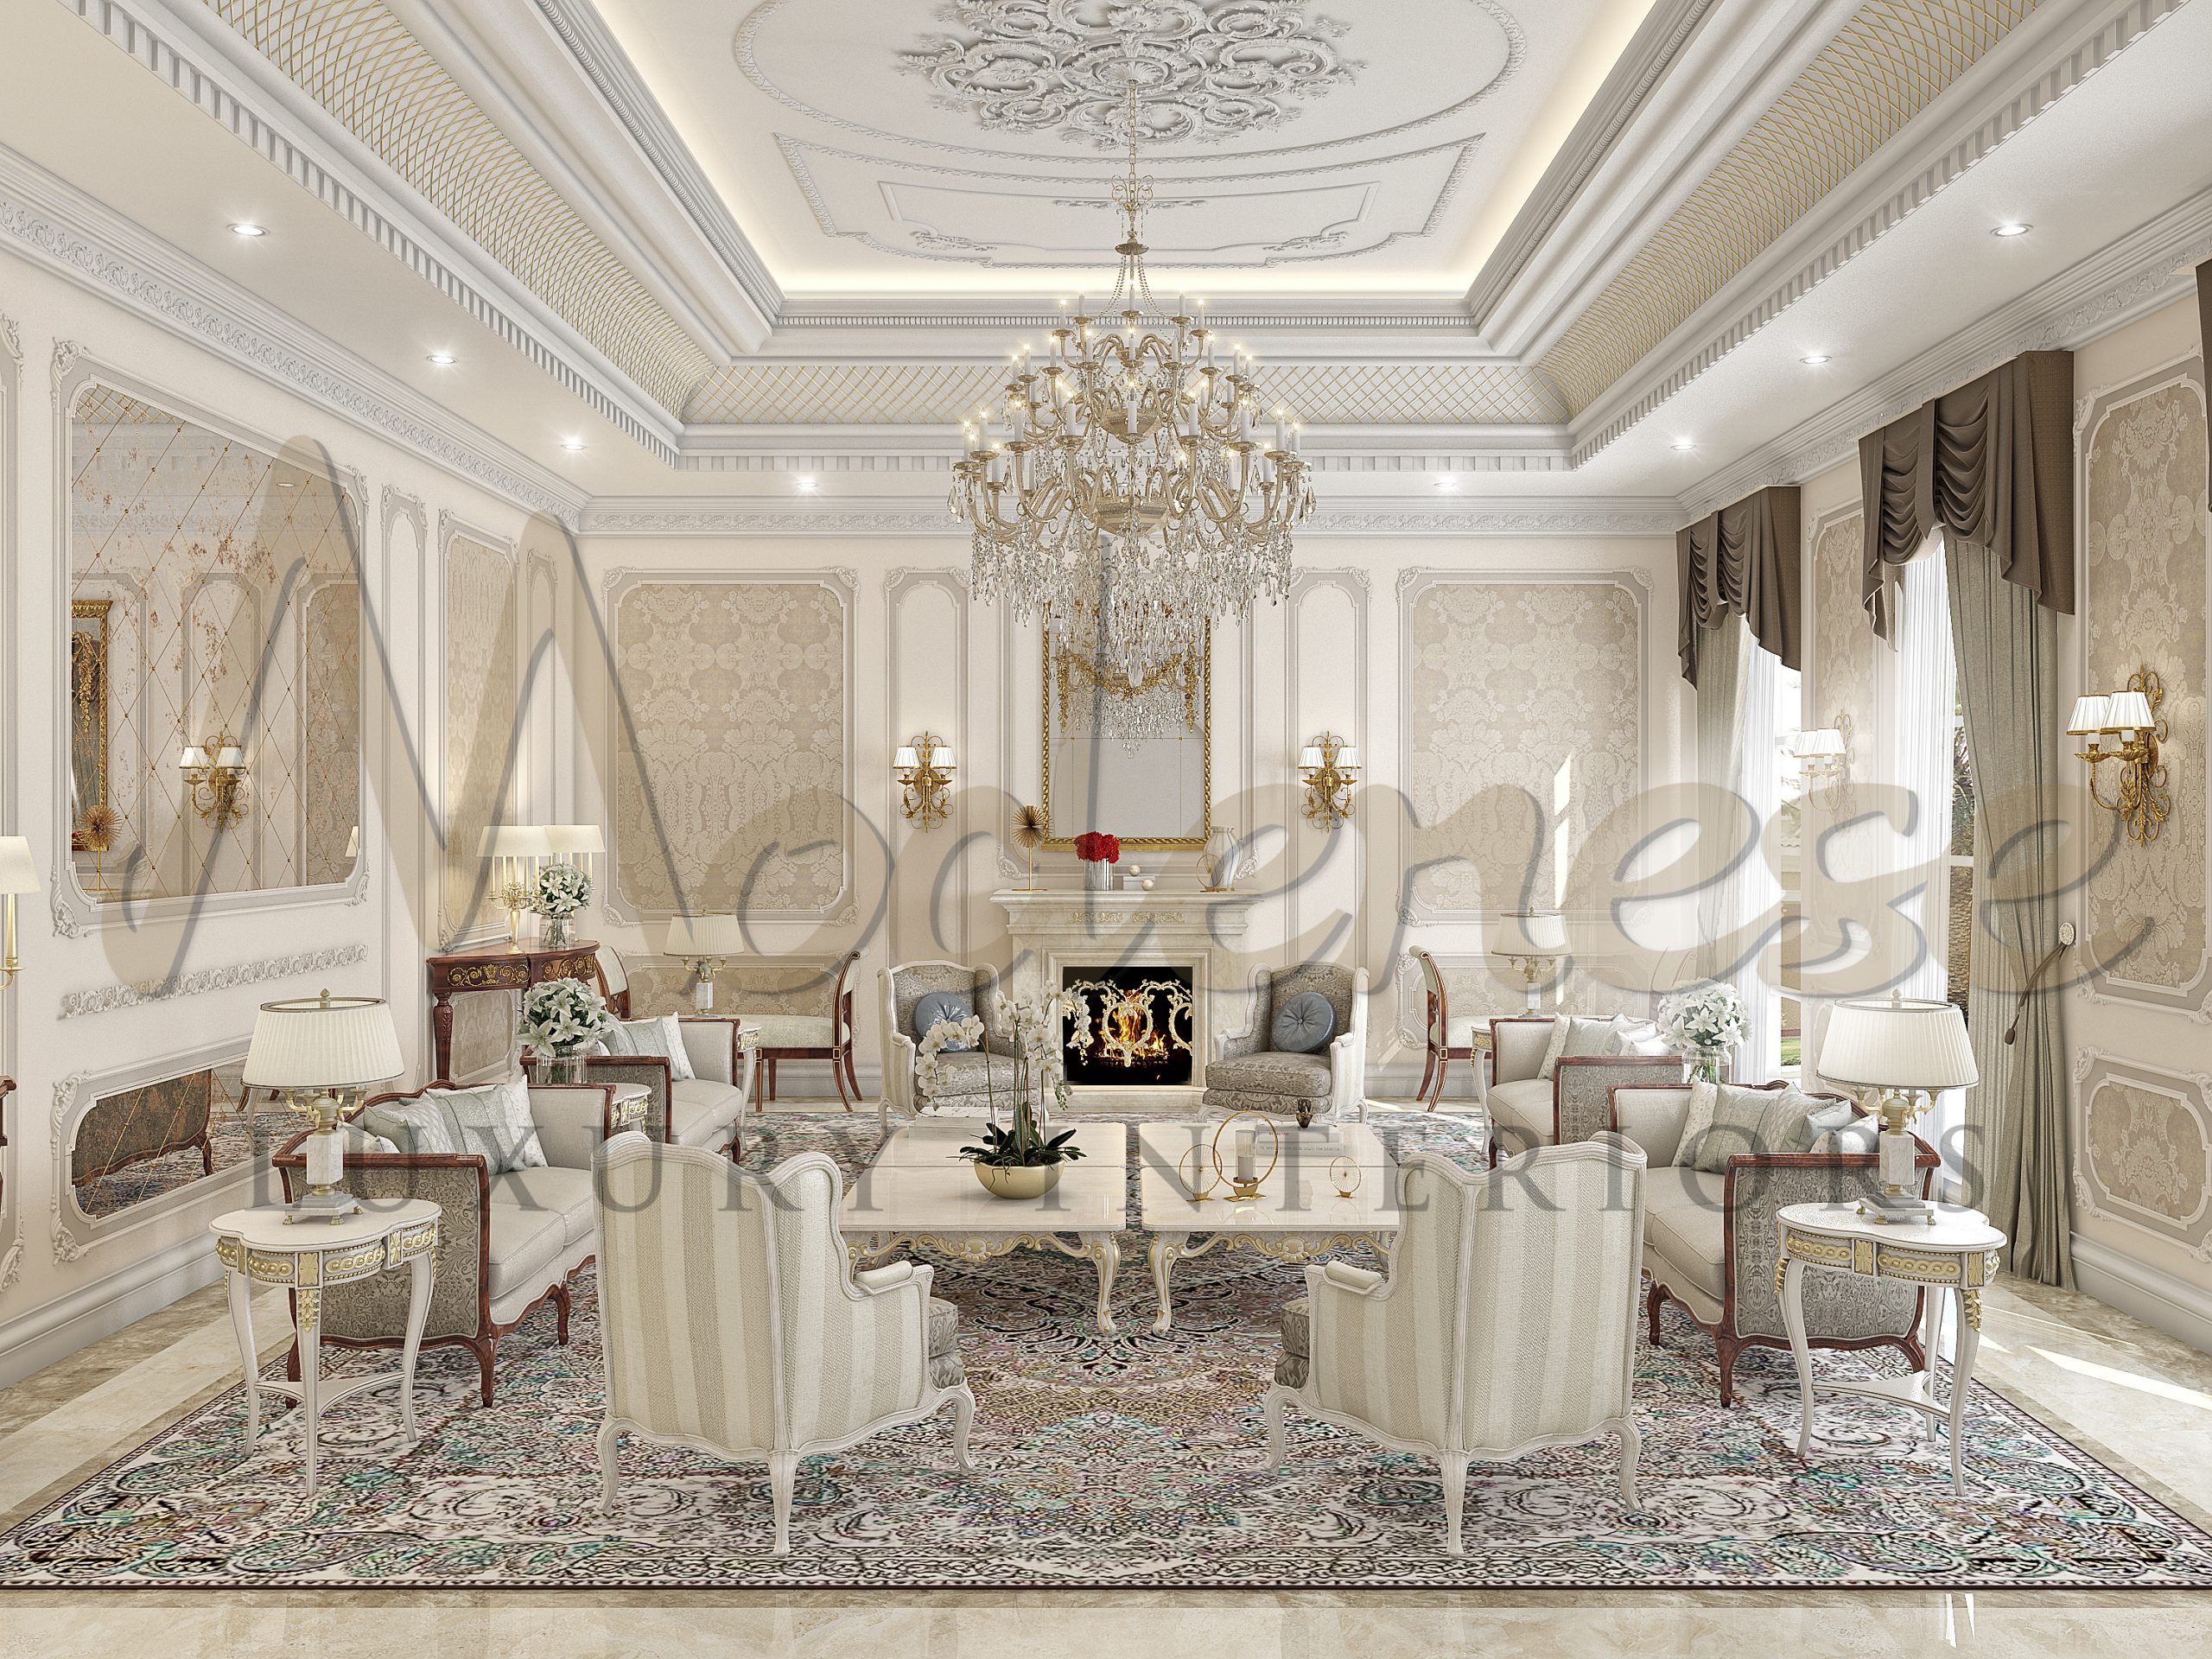 تصميم فيلا فاخرة من Modenese Luxury Interiors ، جدة، المملكة العربية السعودية